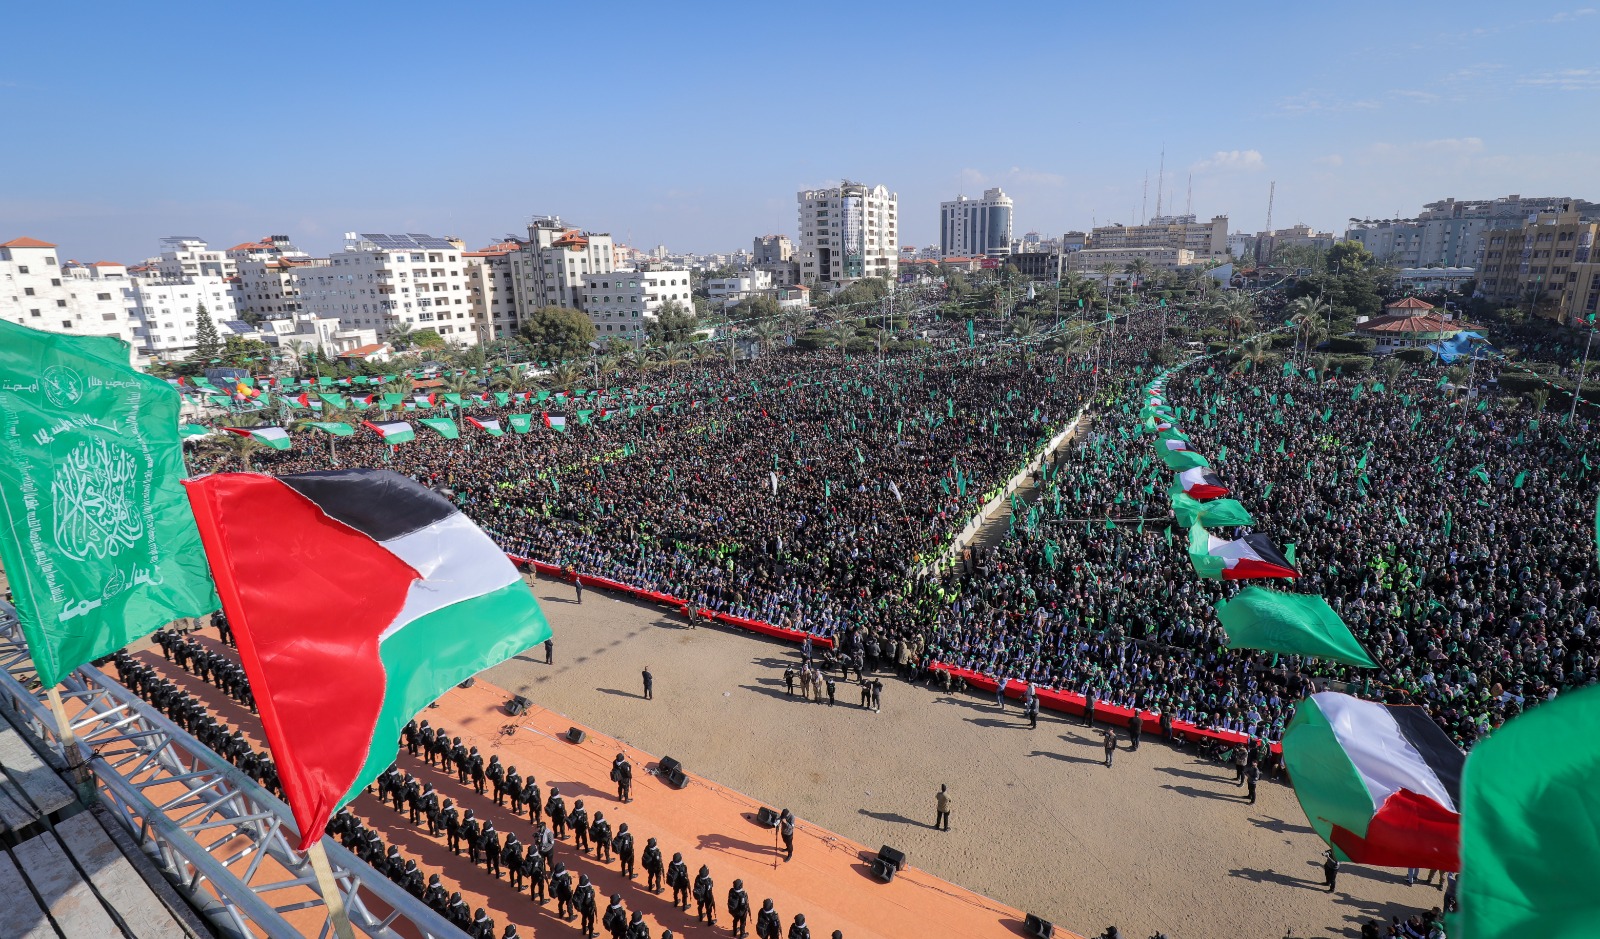 حماس: نعمل مع الوسطاء لإغلاق ملف المدنيين حال توفرت الظروف الأمنية المناسبة